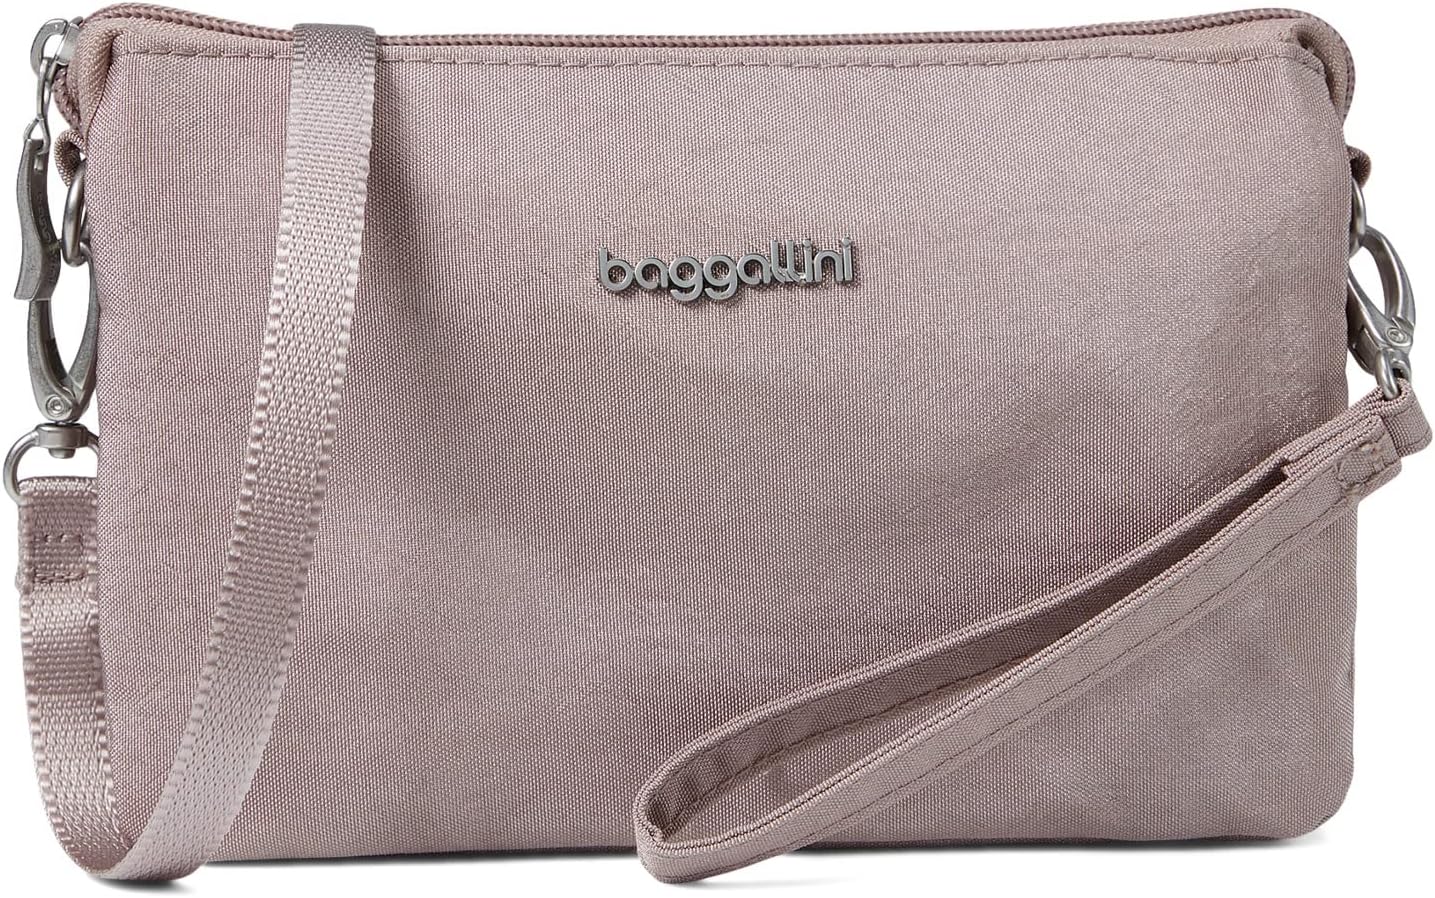 Единственная мини-сумка Baggallini, цвет Blush Shimmer